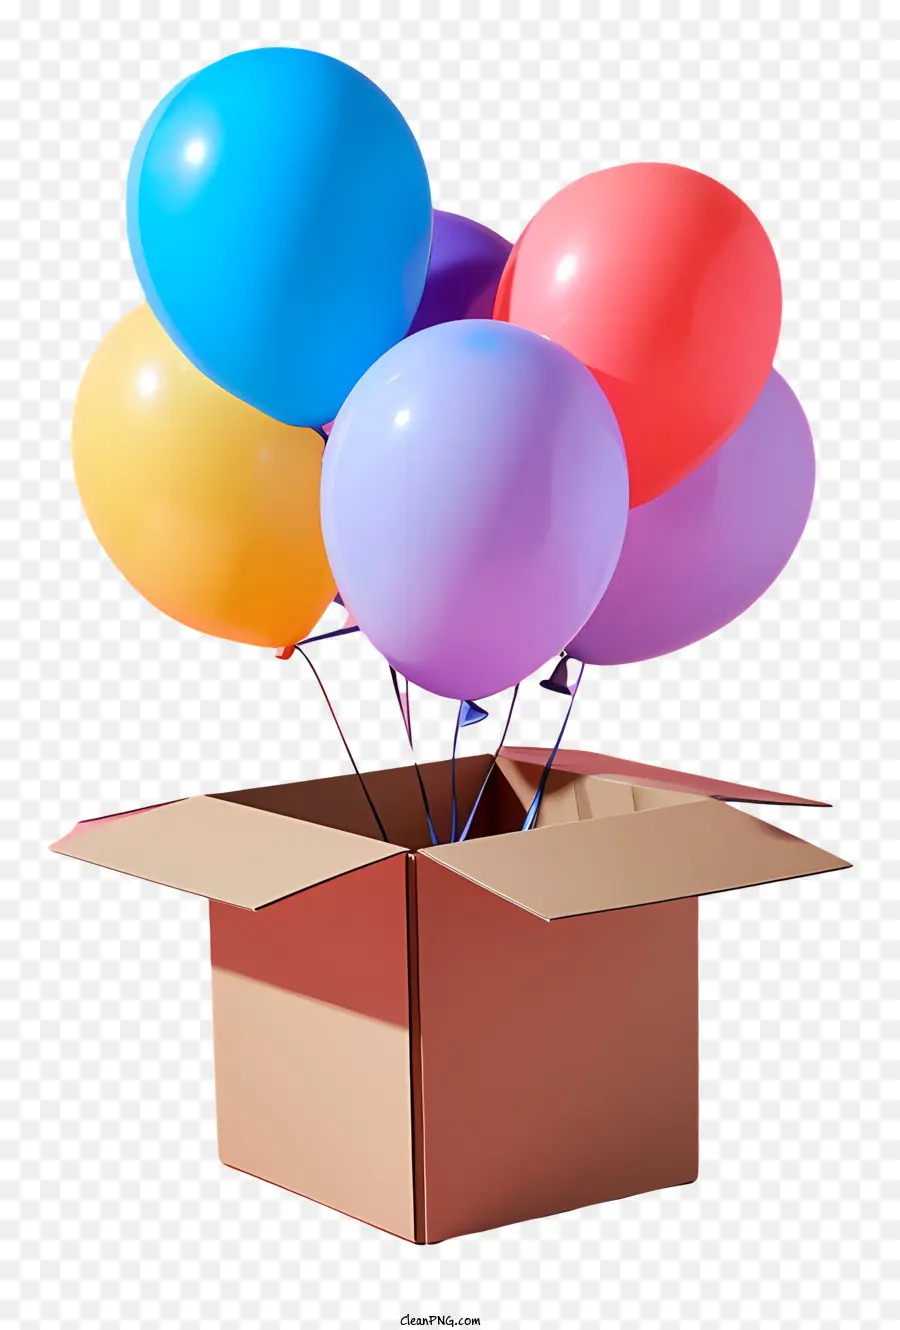 scatola di cartone - Scatola di cartone riempita con palloncini galleggianti colorati